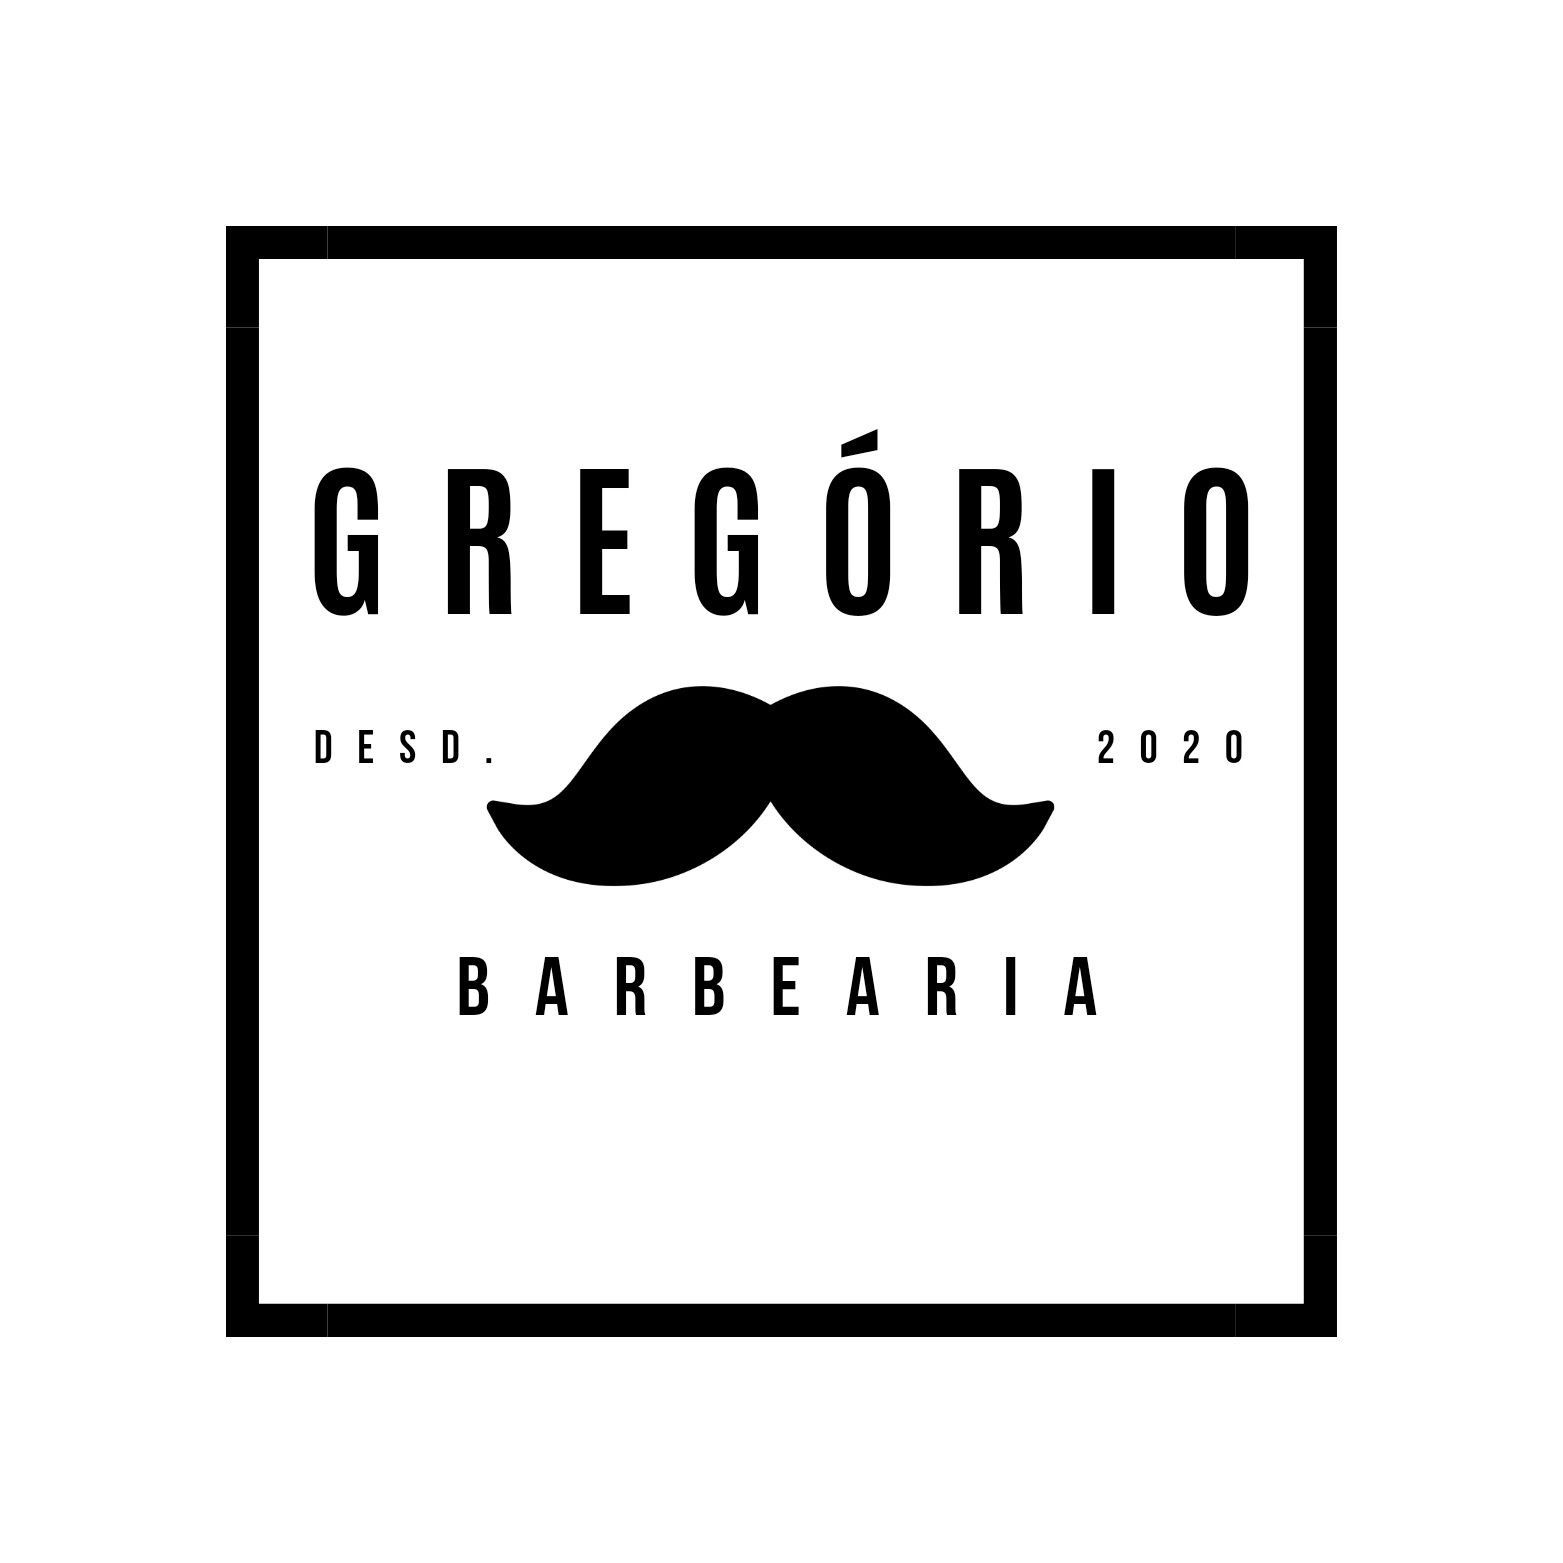 GREGÓRIO BARBEARIA, Rua Gardênia, 42, 07159-720, Guarulhos